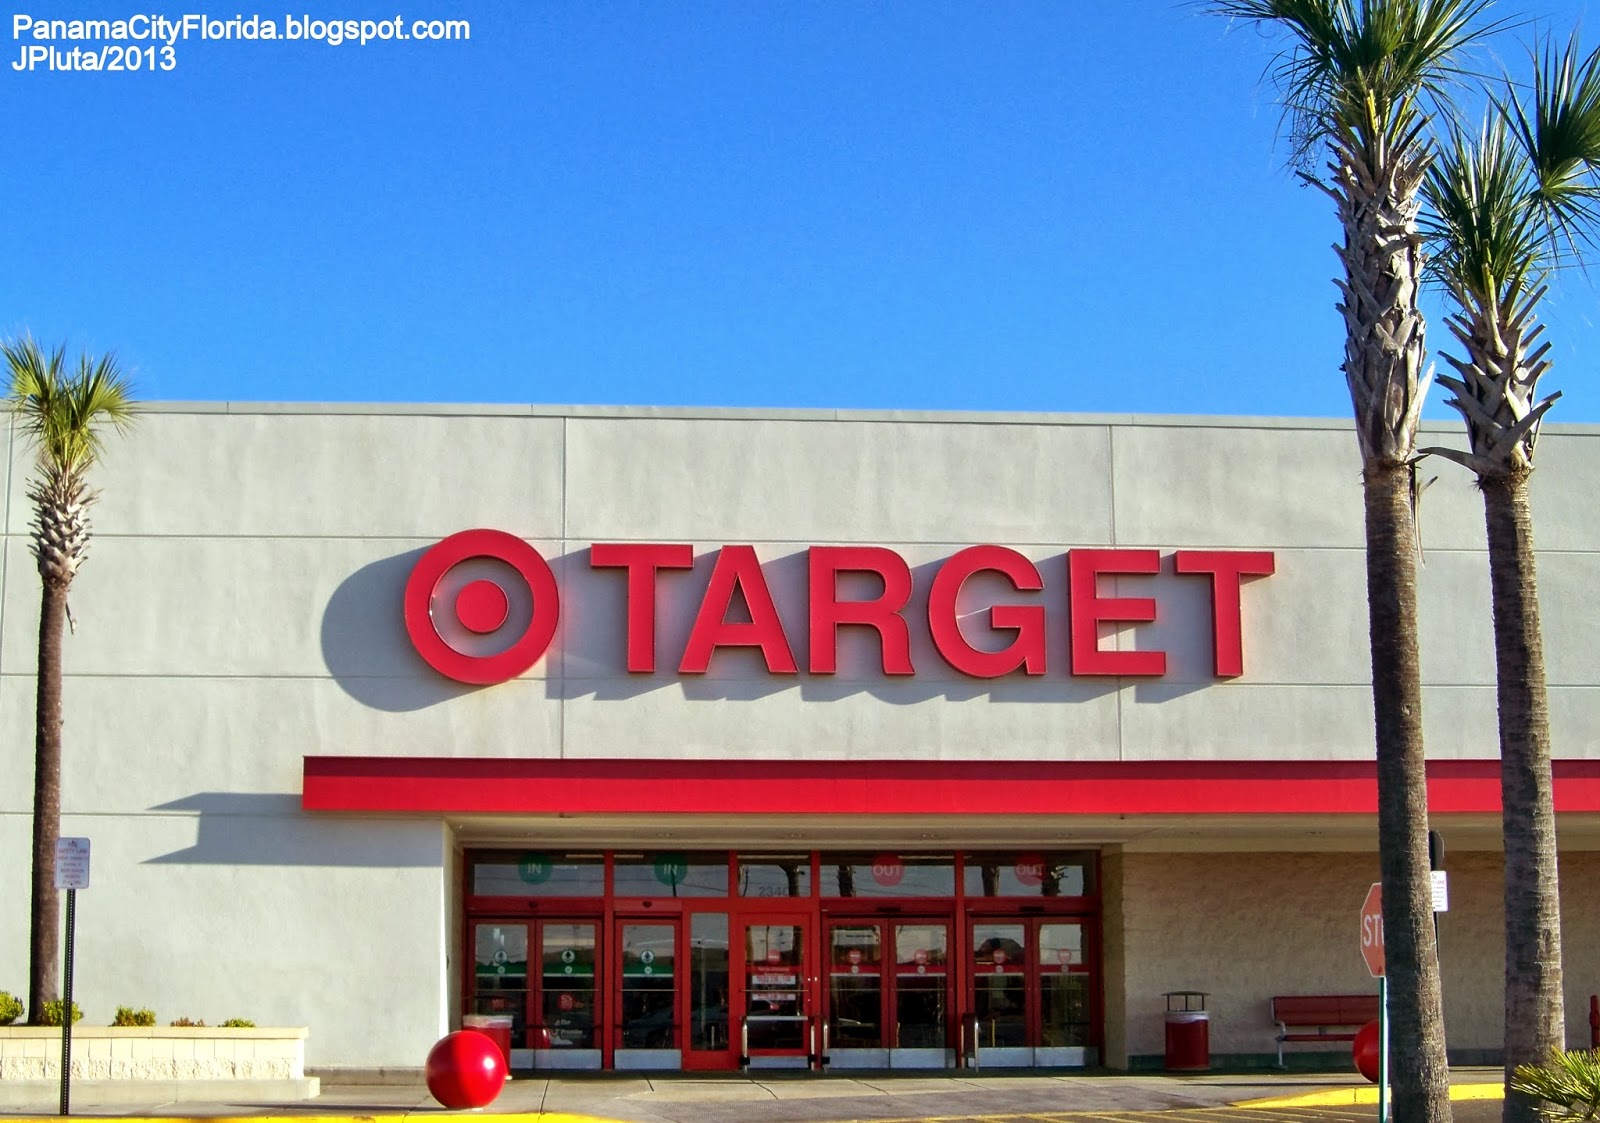 ... Store FL.: TARGET STORE PANAMA CITY FLORIDA Hwy. 77, Target Department